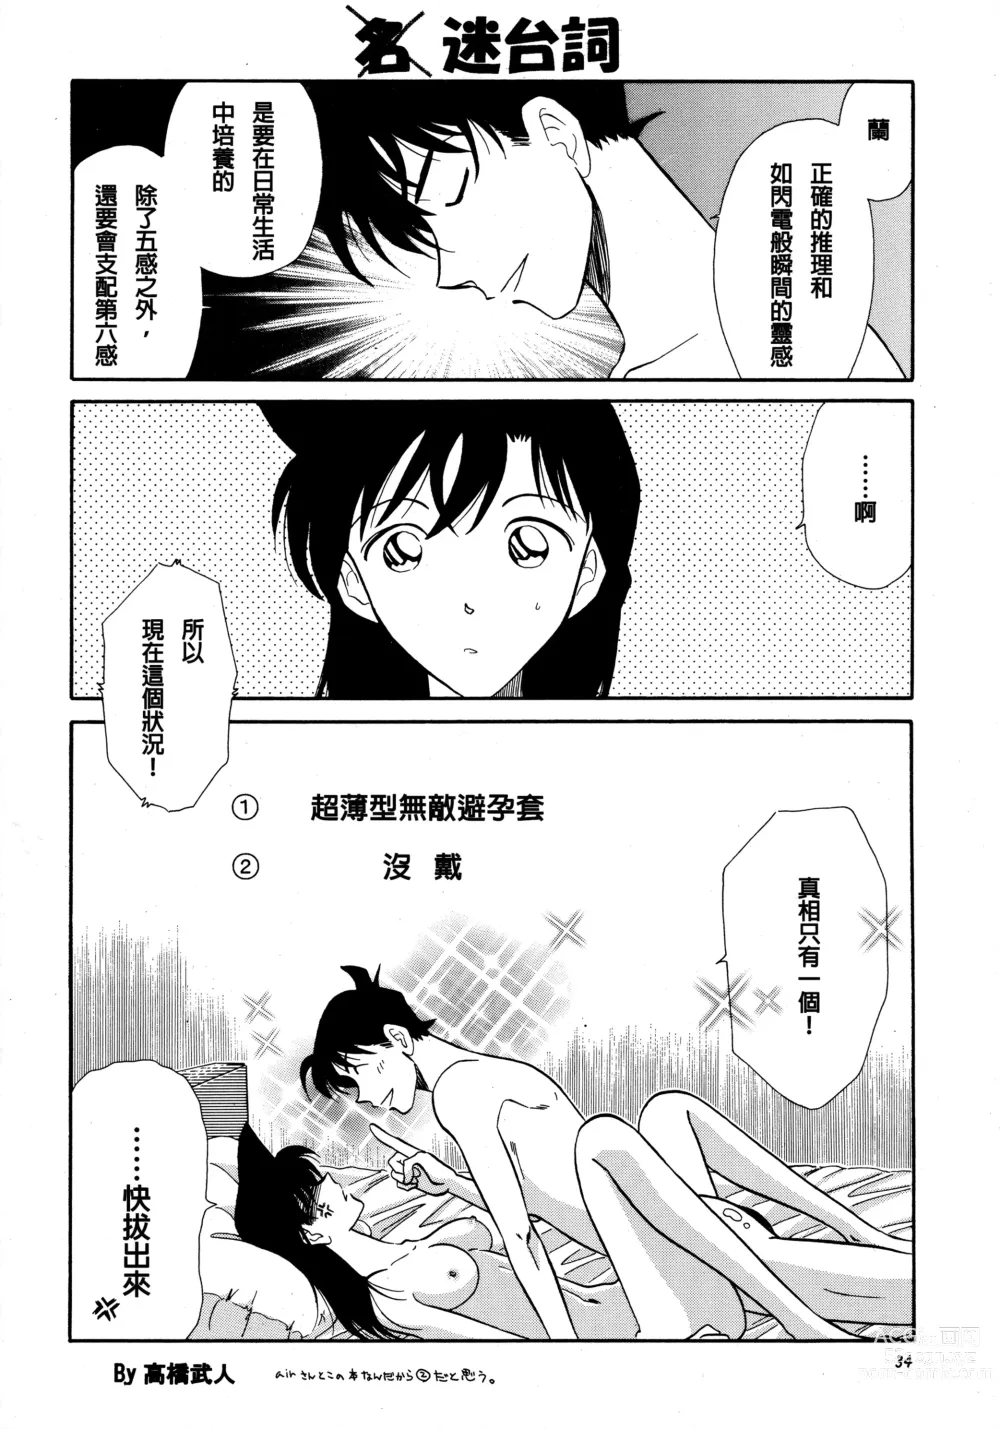 Page 33 of doujinshi Beika Saga Shoutengai Sono Ichi